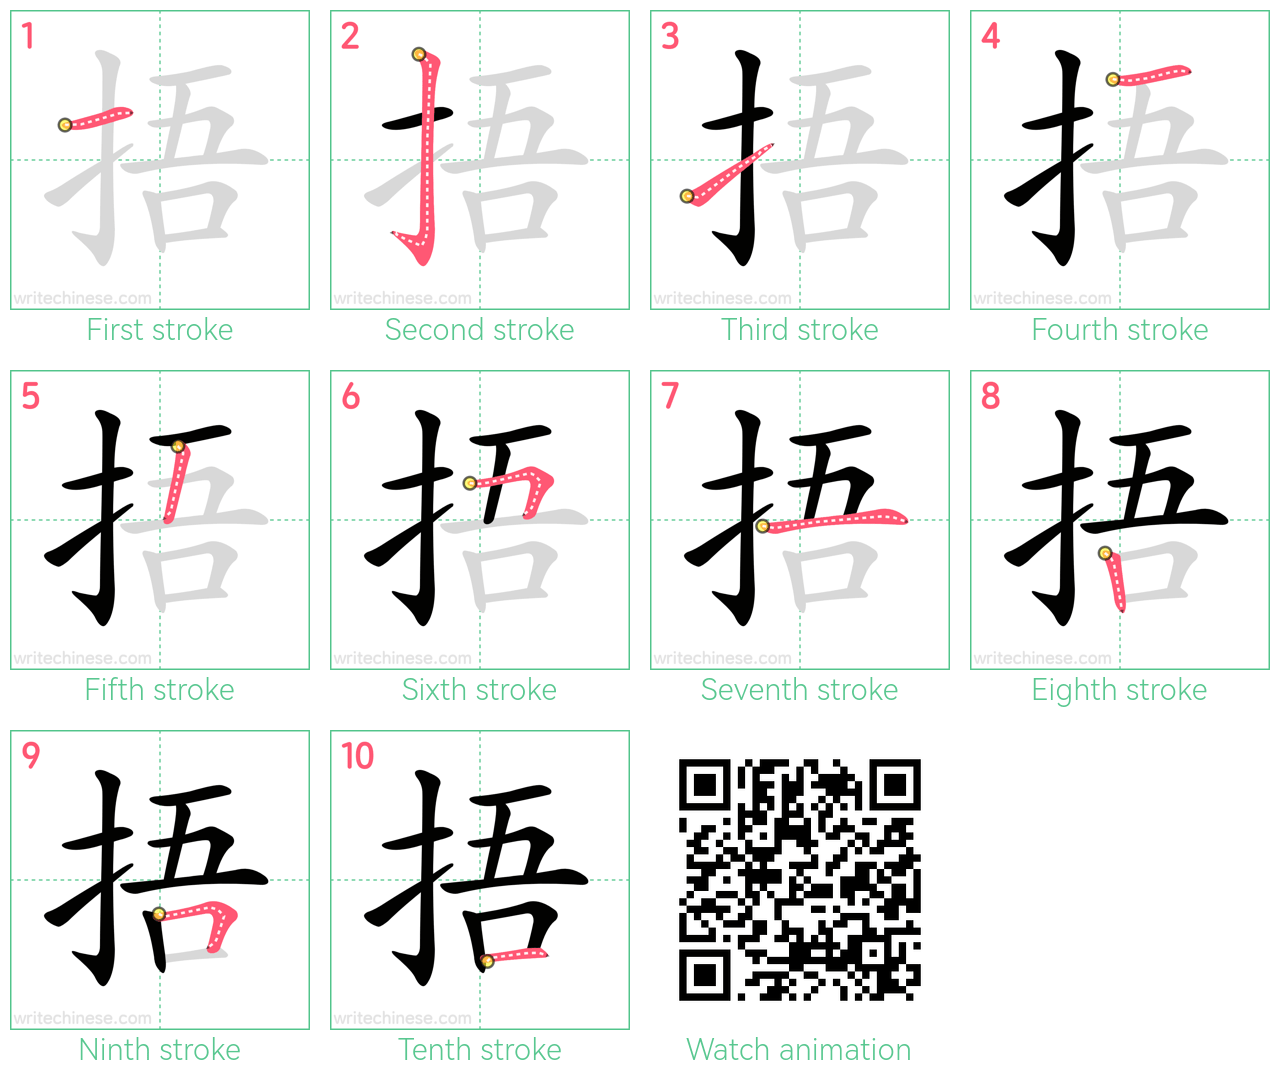 捂 step-by-step stroke order diagrams